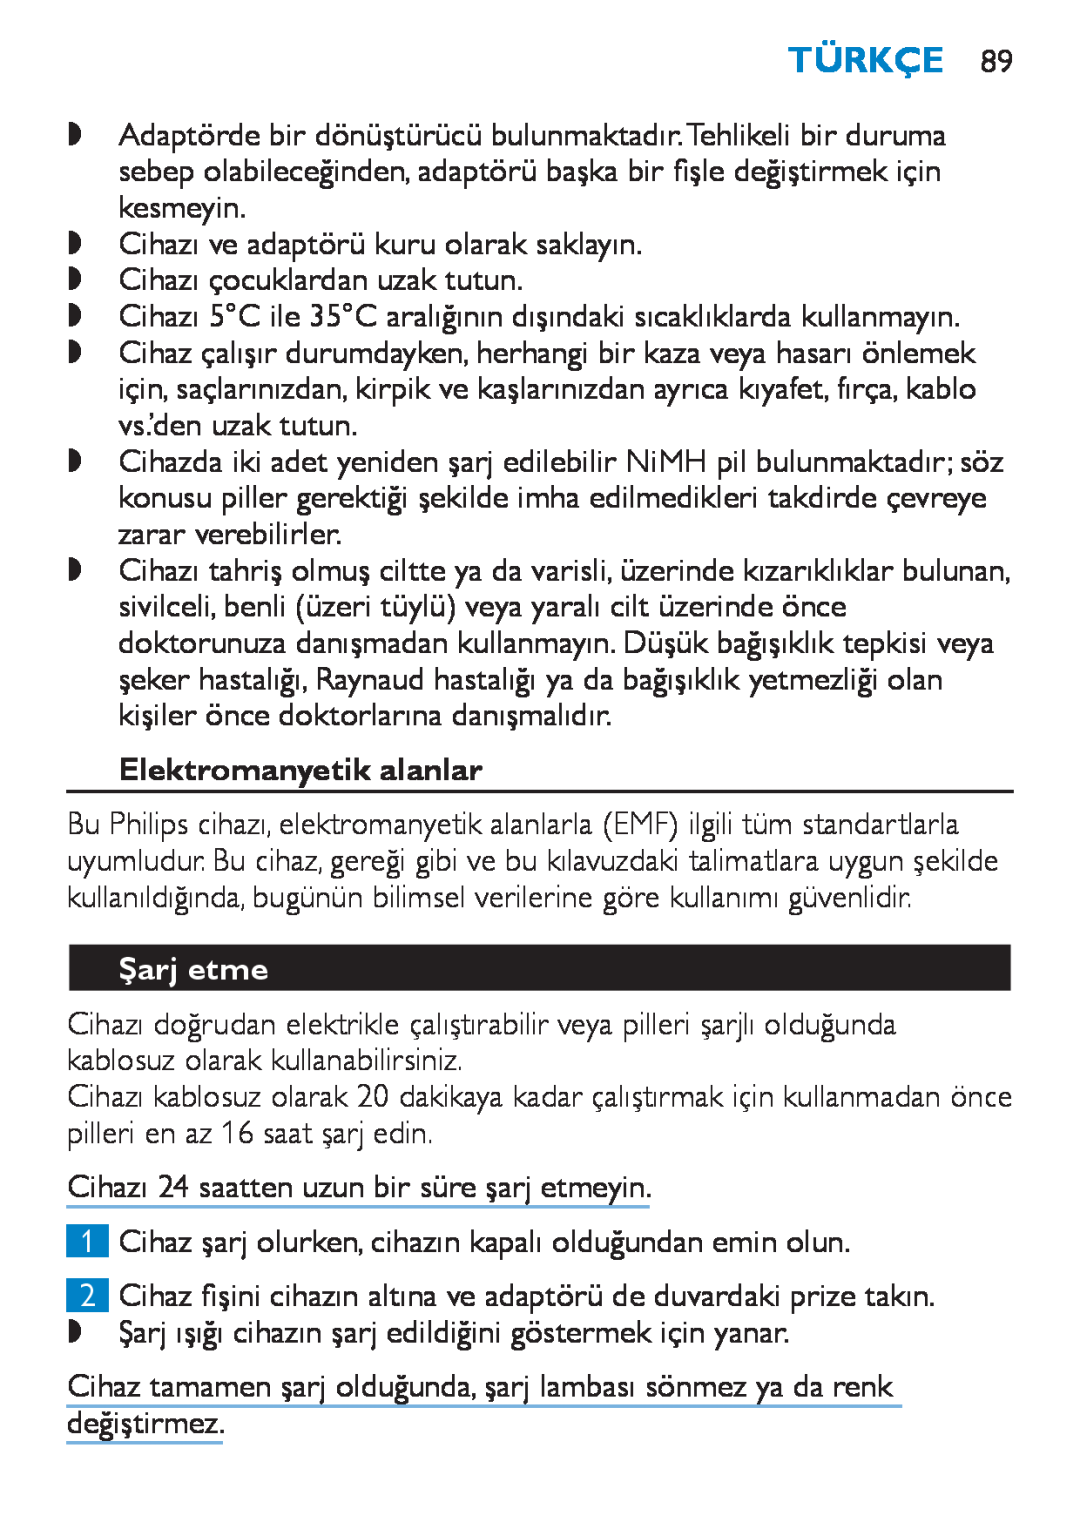 Philips HP6490 manual Türkçe, Elektromanyetik alanlar, Şarj etme 